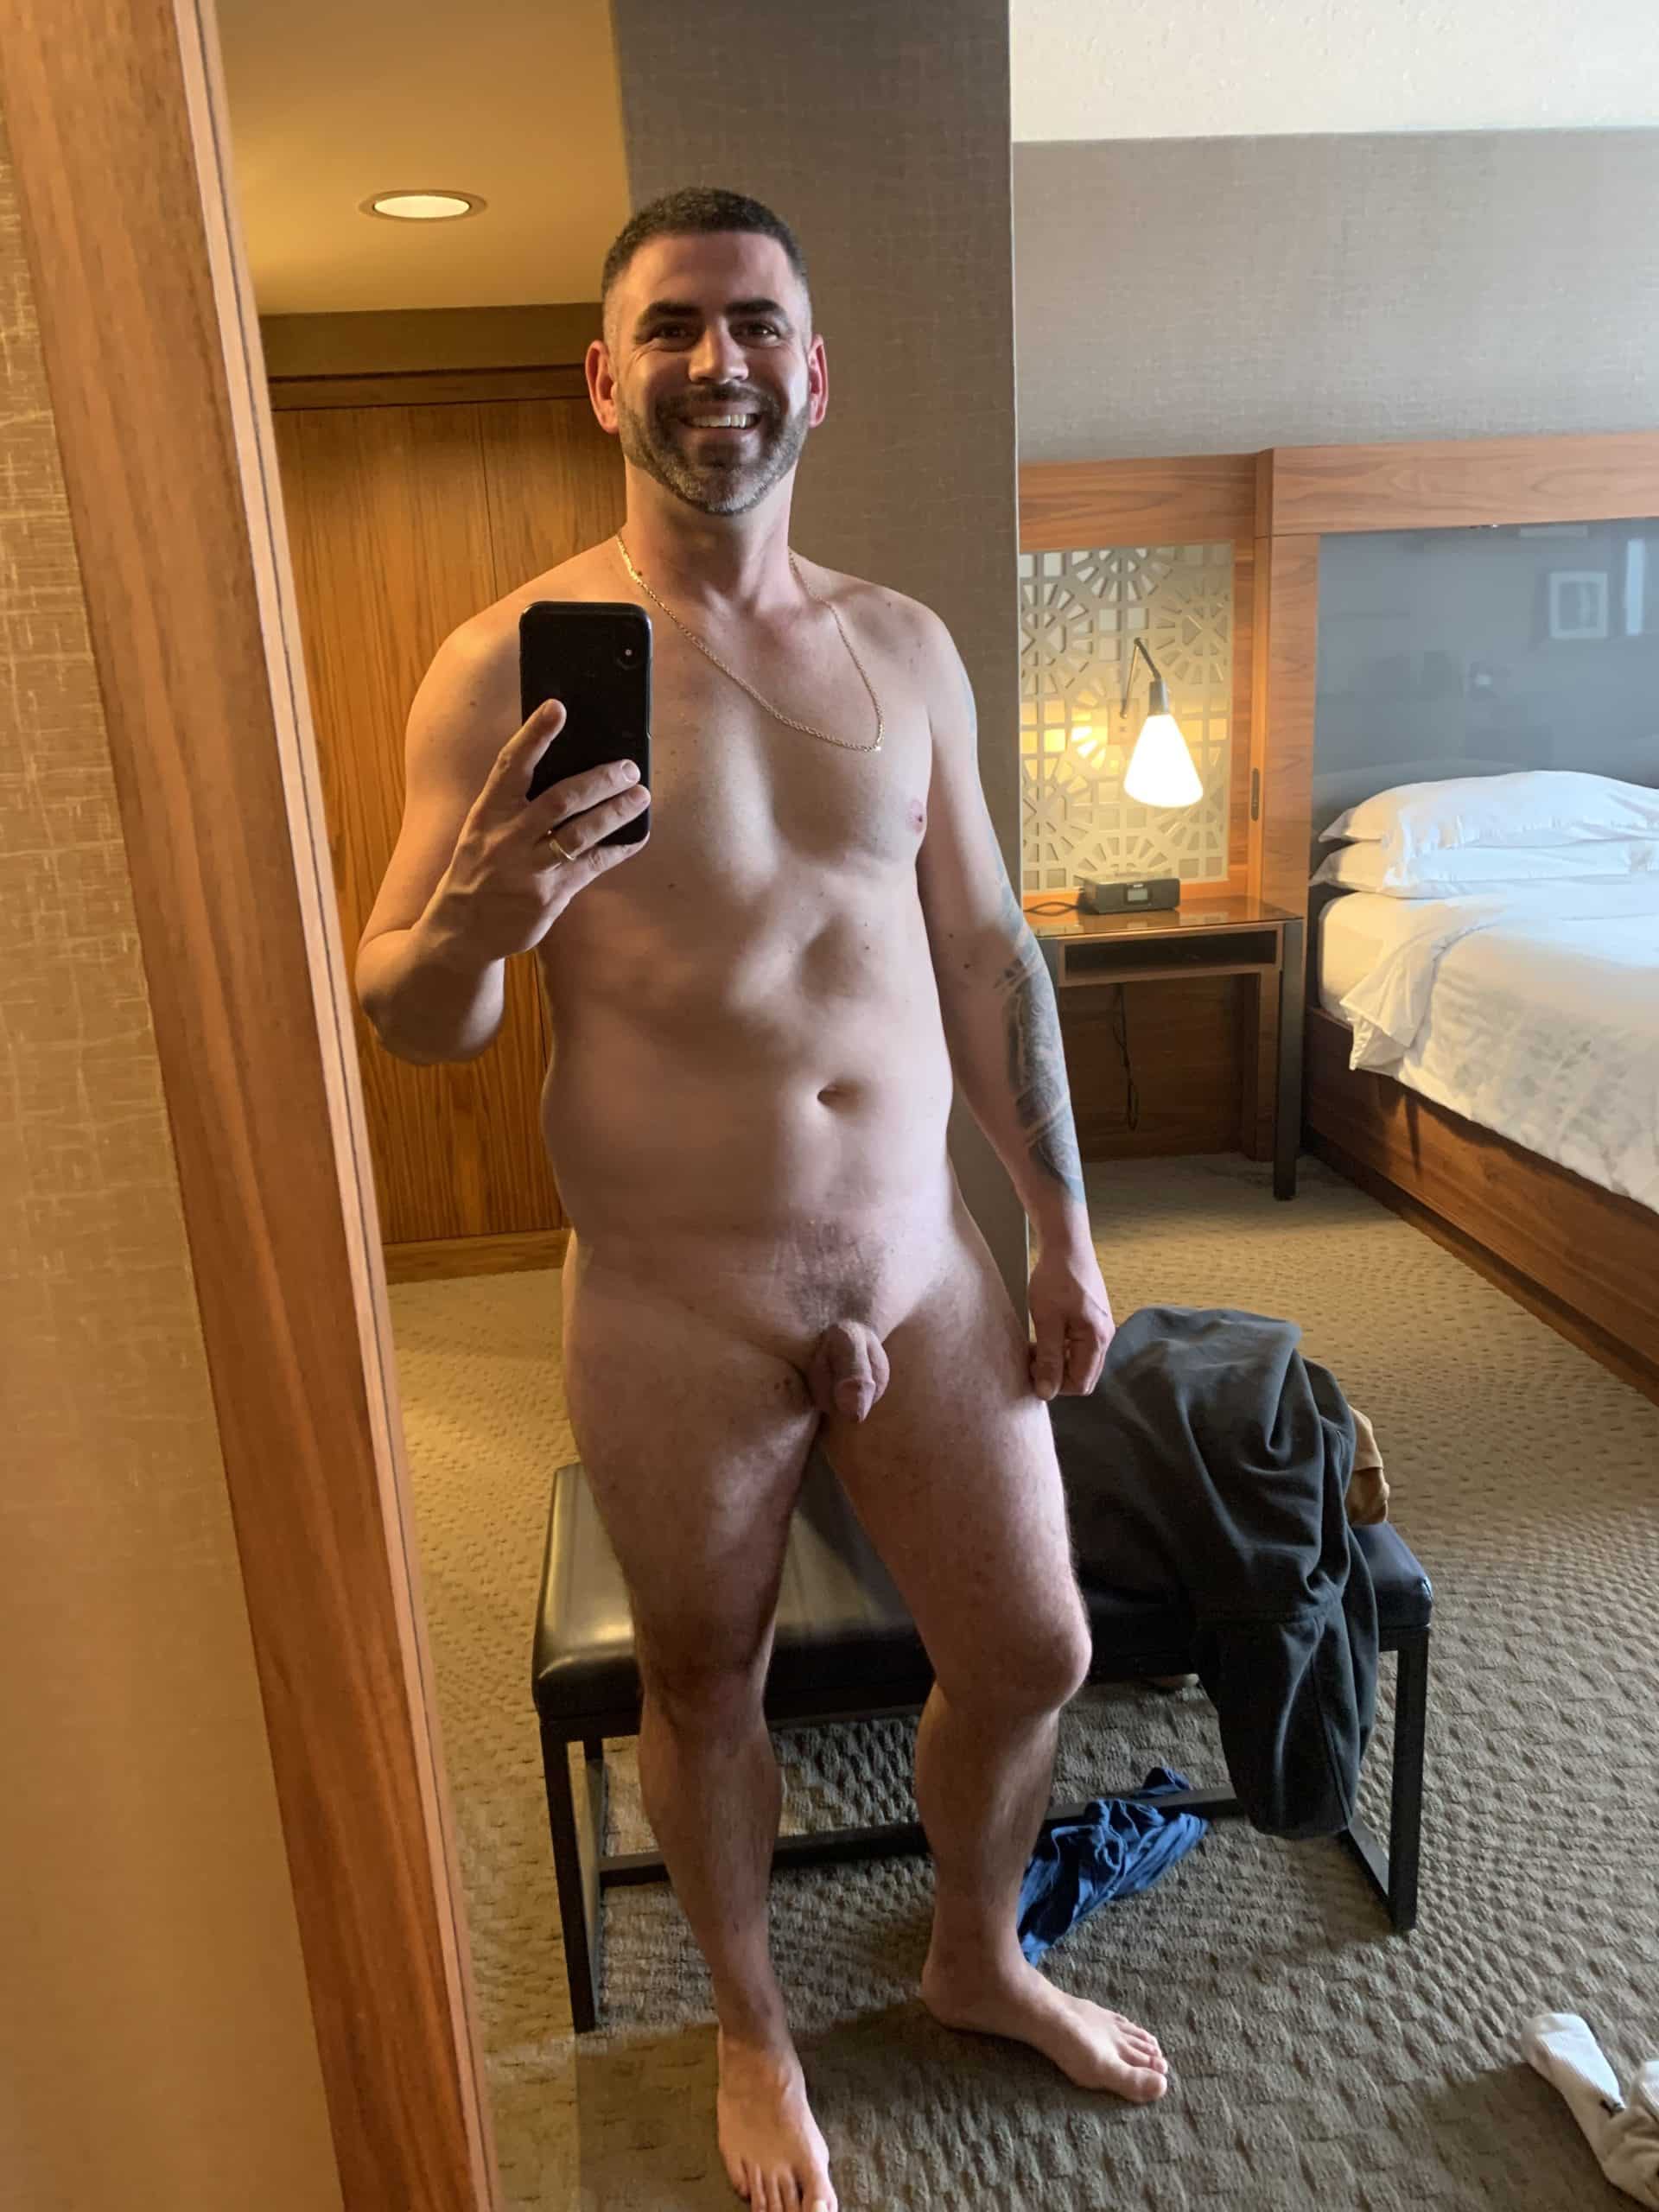 Dick Flash Pics: Rob Crook not hard at hotel